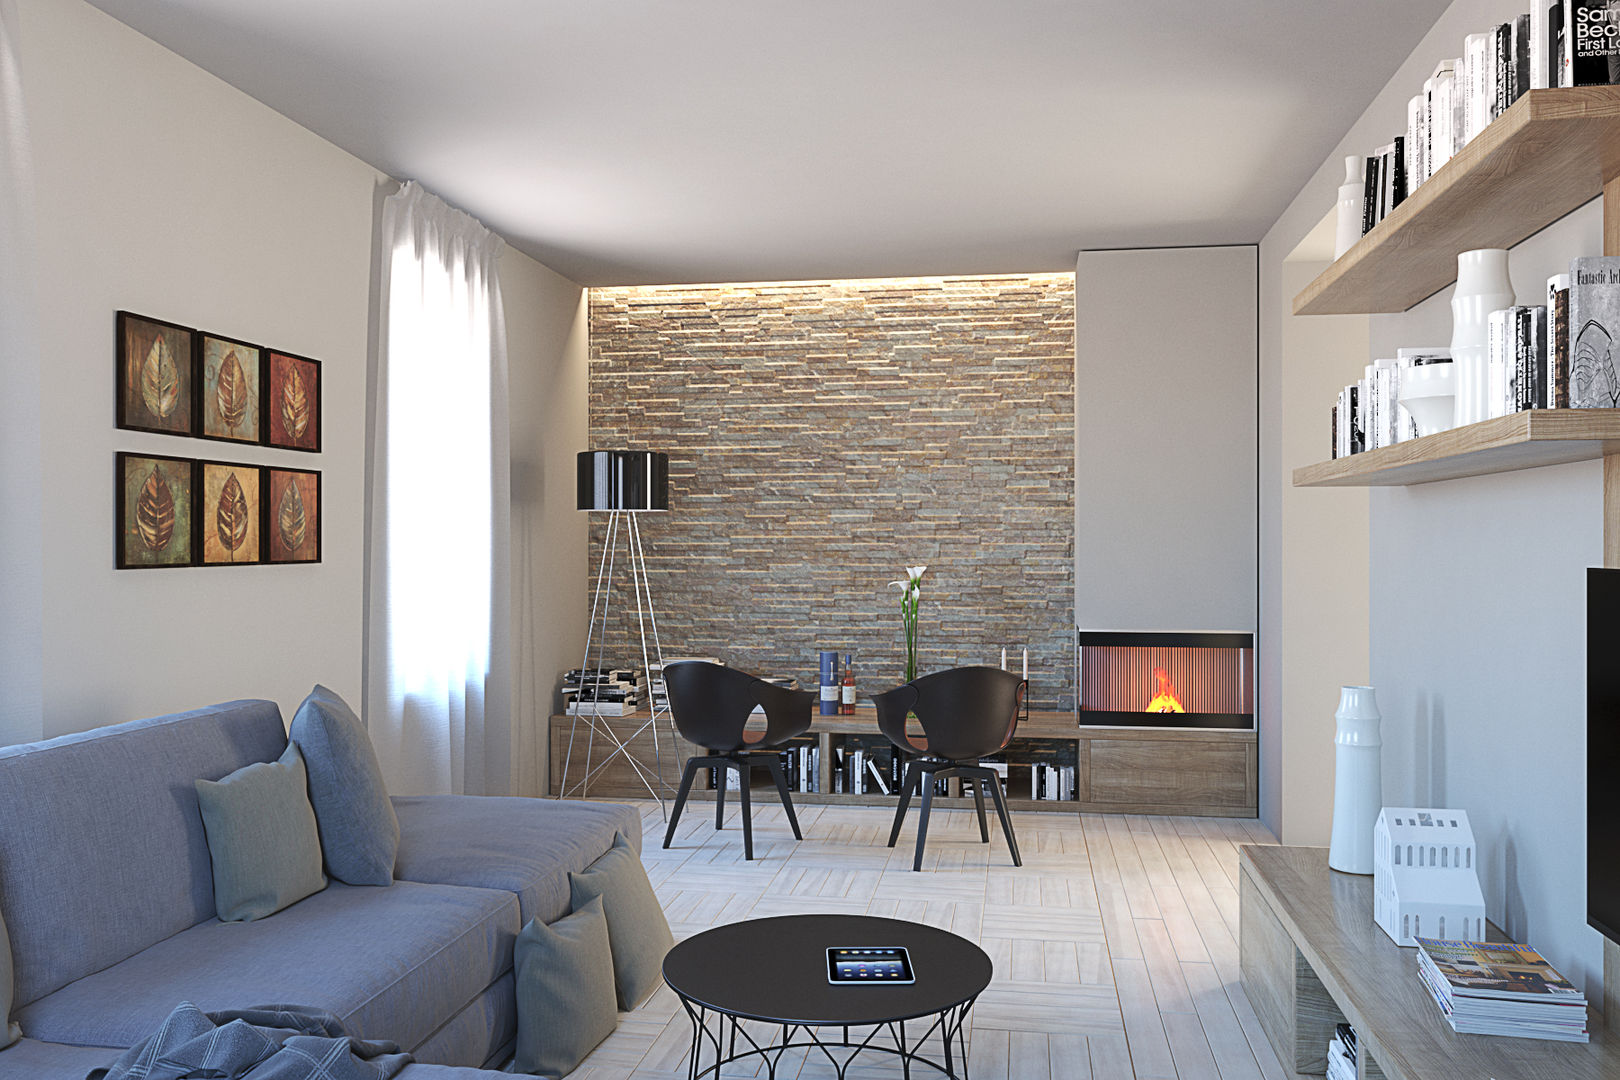 L'angolo stufa in soggiorno 3d-arch Soggiorno moderno soggiorno,living,parete,pietra,stufa,camino,pavimento,divano